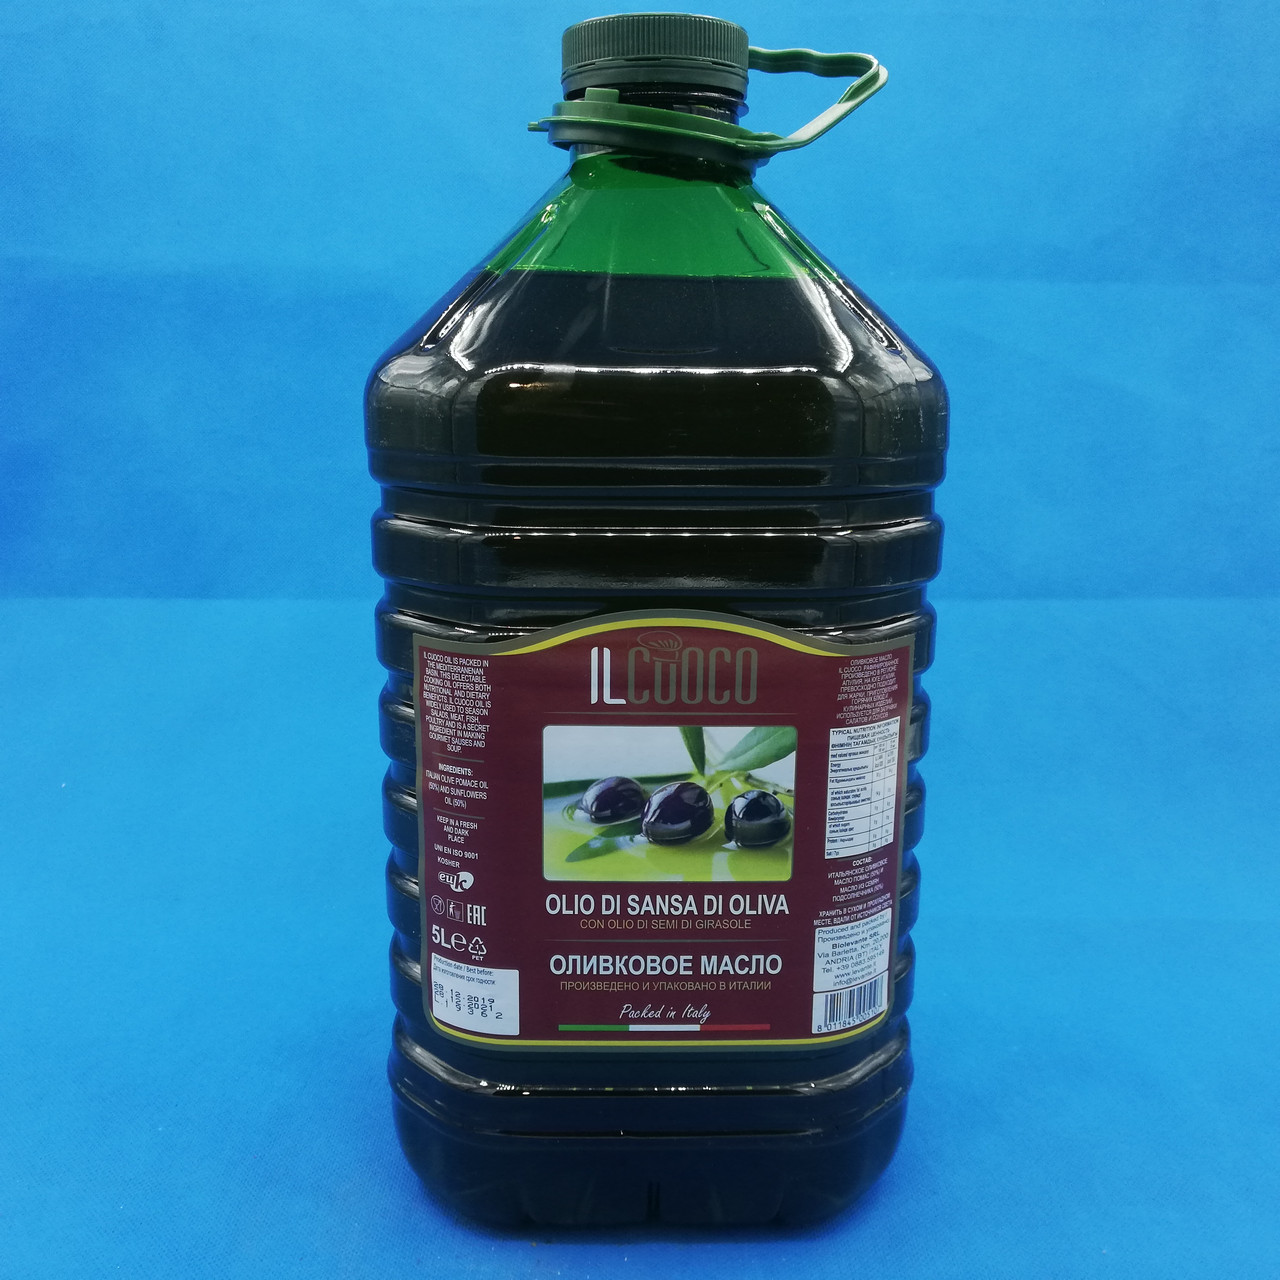 Оливковое масло Ilcooco, в бутылке, 5 л